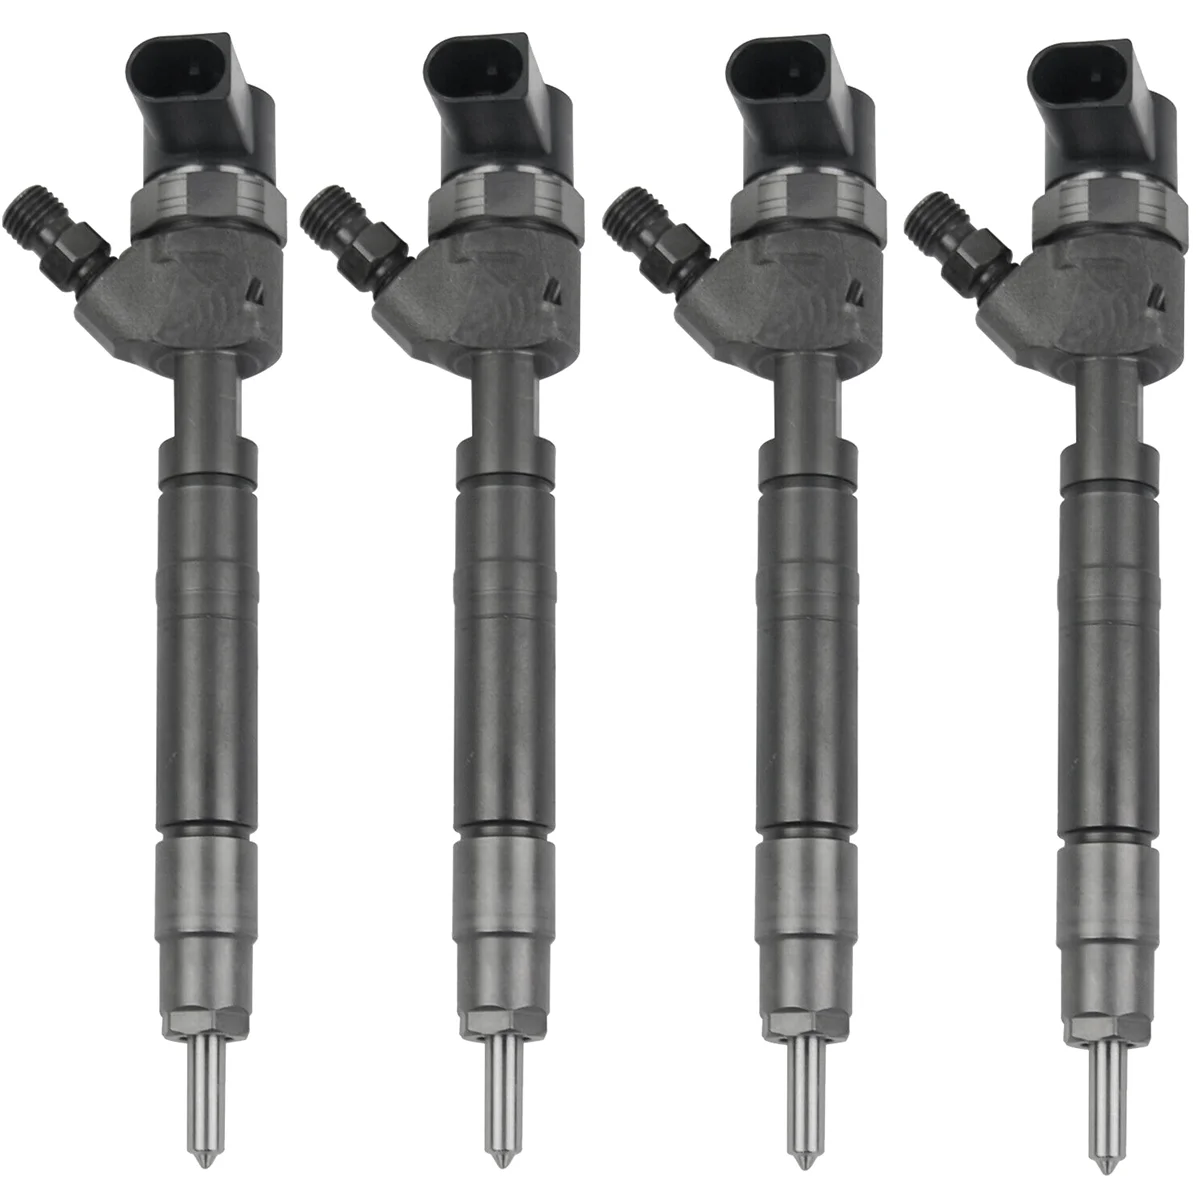 

4PCS 0445110035 0445110096 New Crude Oil Fuel Injector Nozzle for Mercedes-Benz ML270 E320 CDI A6130700587 A6130700187